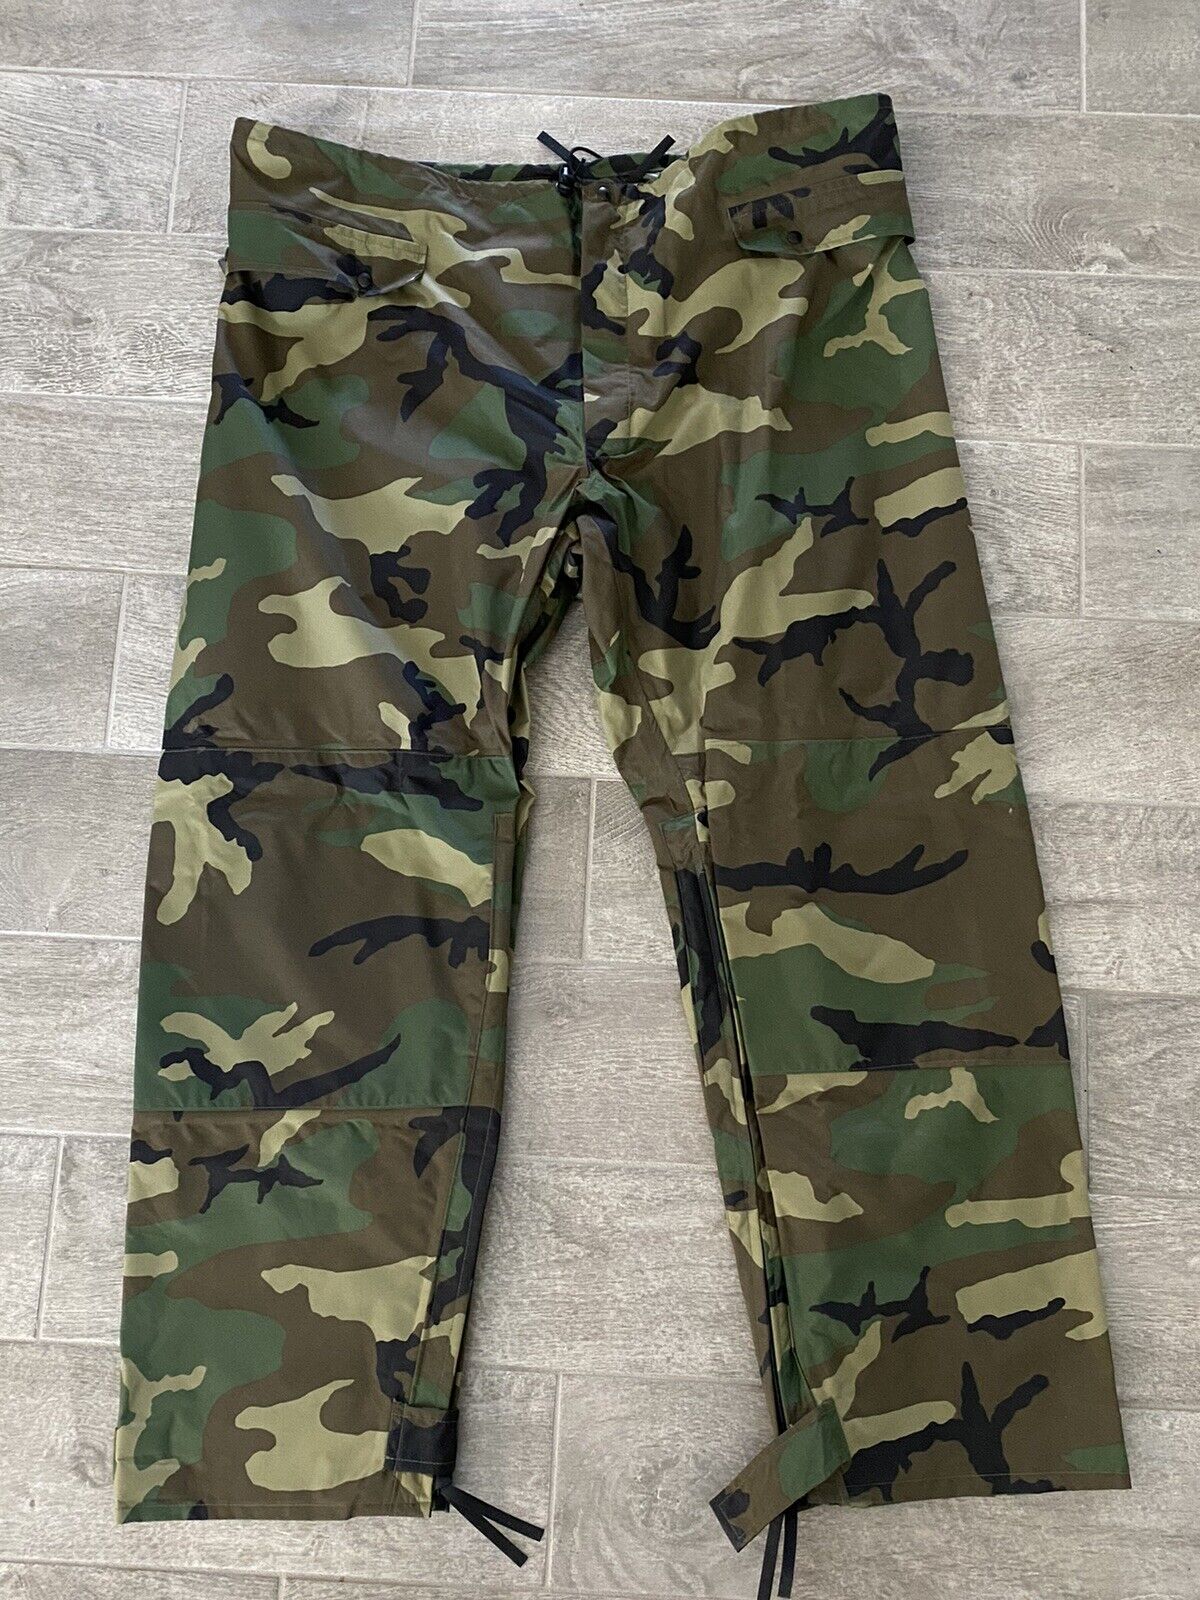 USGI Woodland Camouflage Improved Wet Weather Rainsuit Pants Trousers X-Large